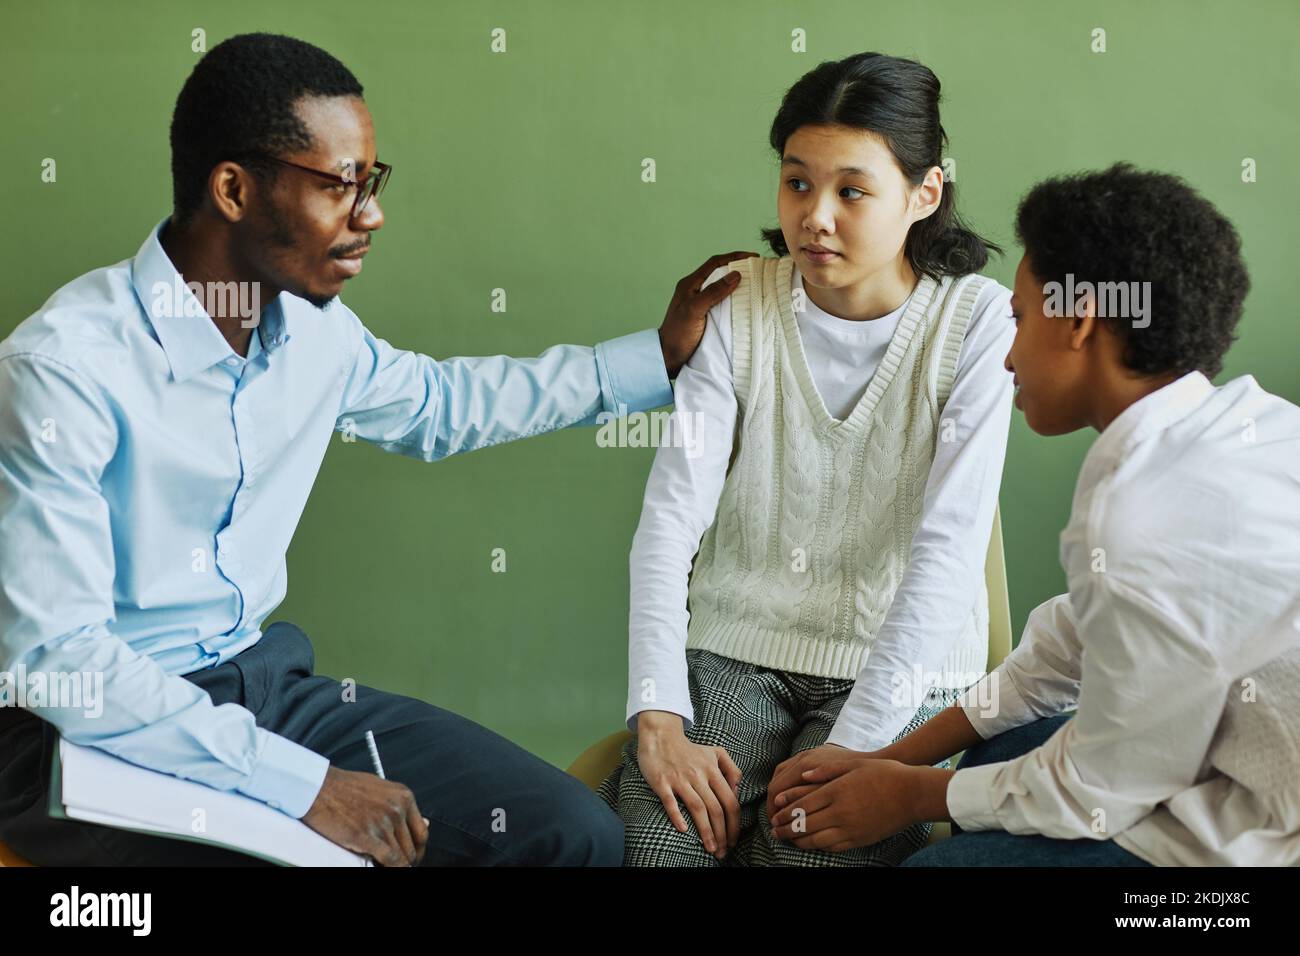 Der junge afroamerikanische Psychologe unterstützt das asiatische Schulmädchen und gibt bei der Sitzung Ratschläge, während er die Hand auf ihrer Schulter hält Stockfoto